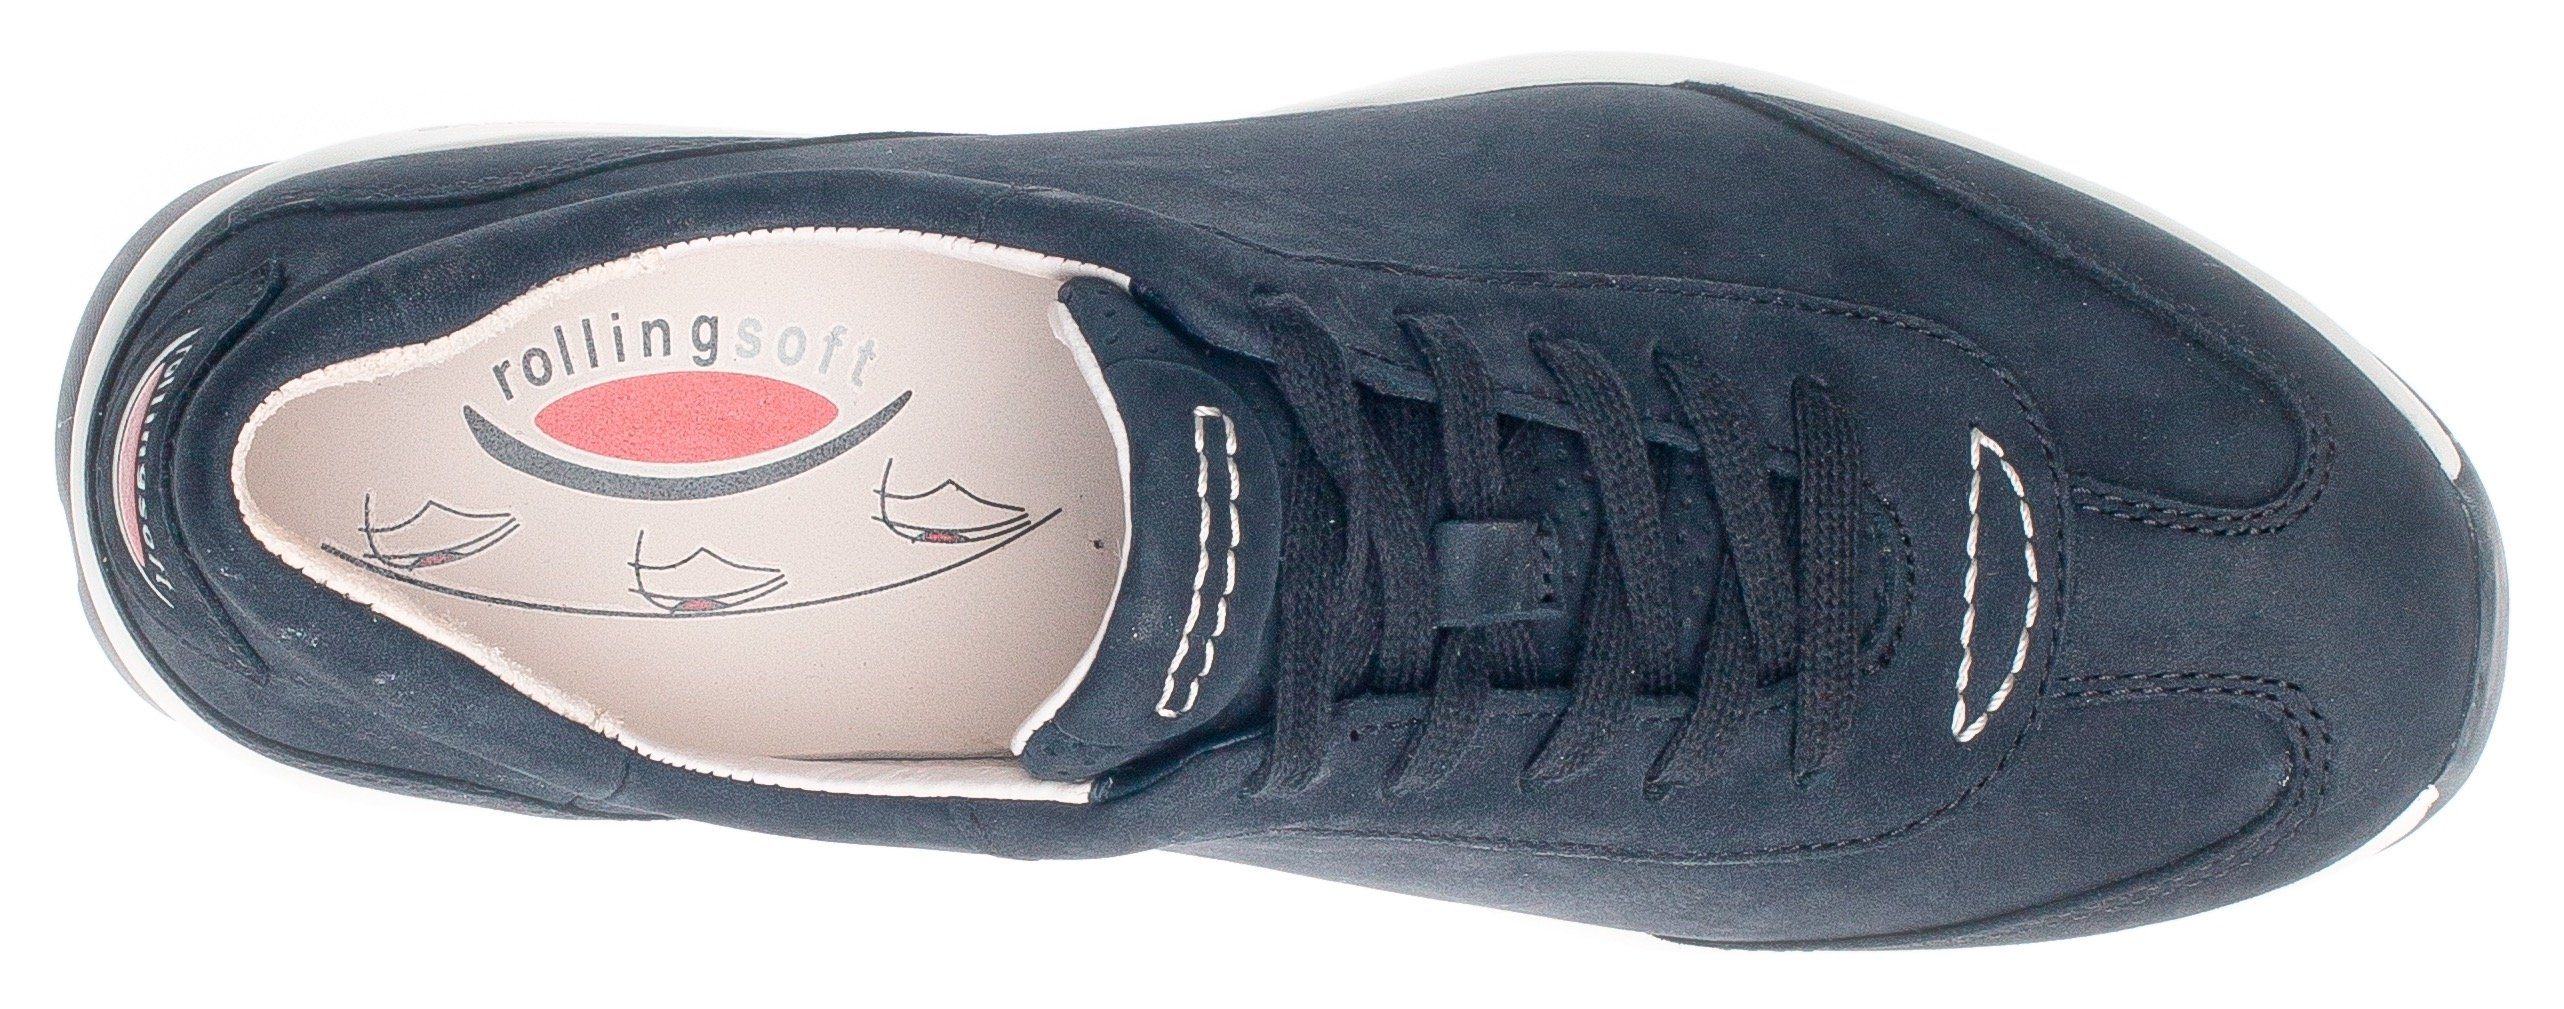 Gabor Rollingsoft Keilsneaker mit der nachtblau Logoschriftzug an Ferse